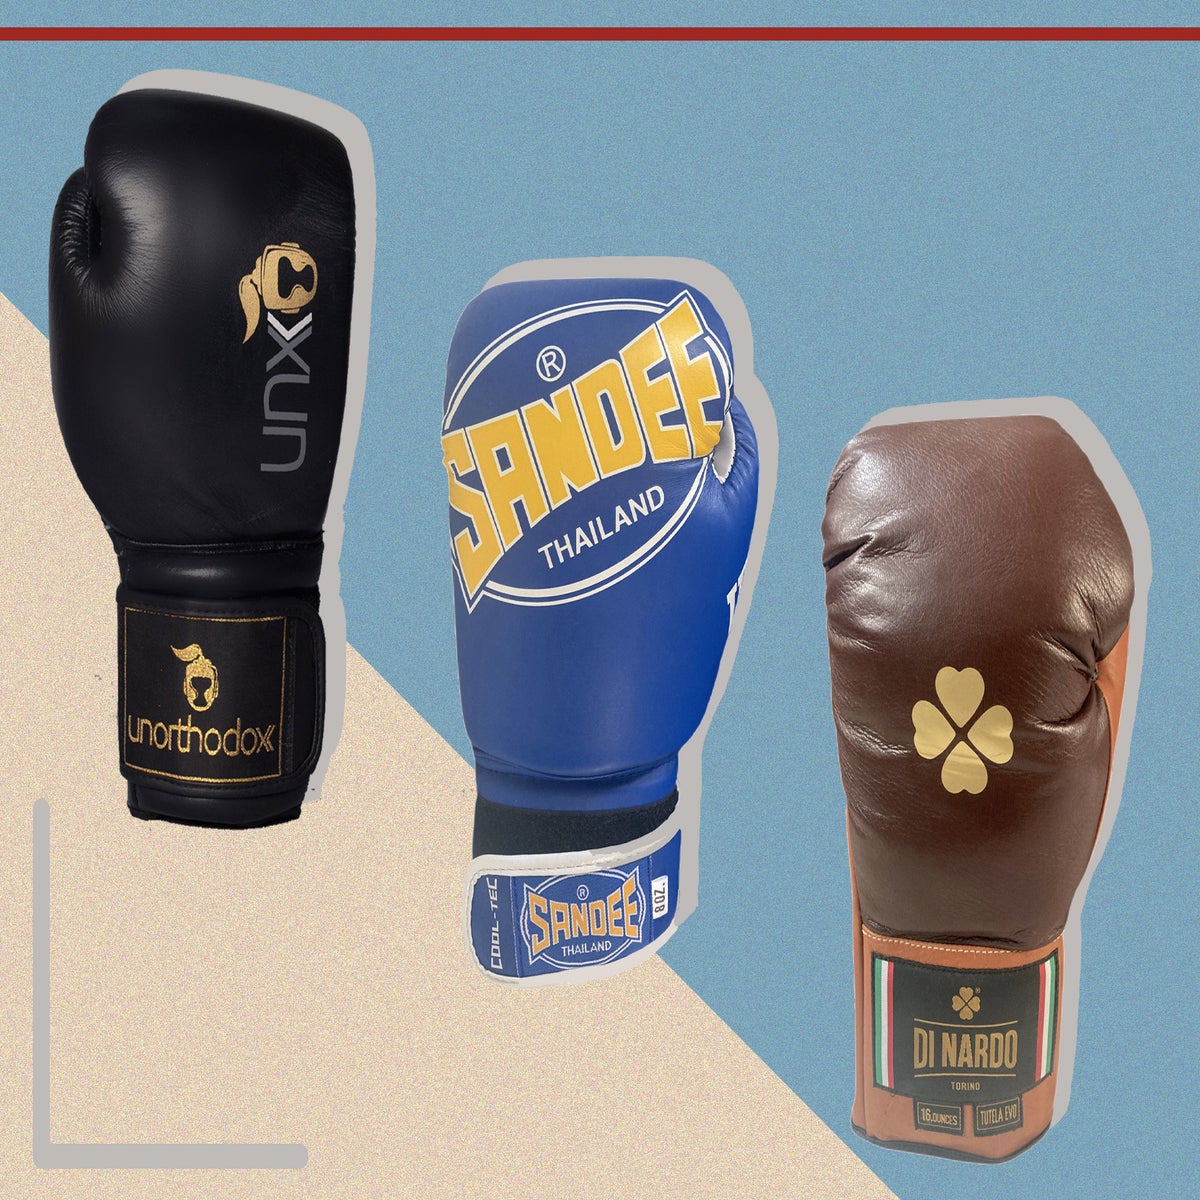 Buddha Boxing Glove Top. “Excelente opción para Kickboxing. 